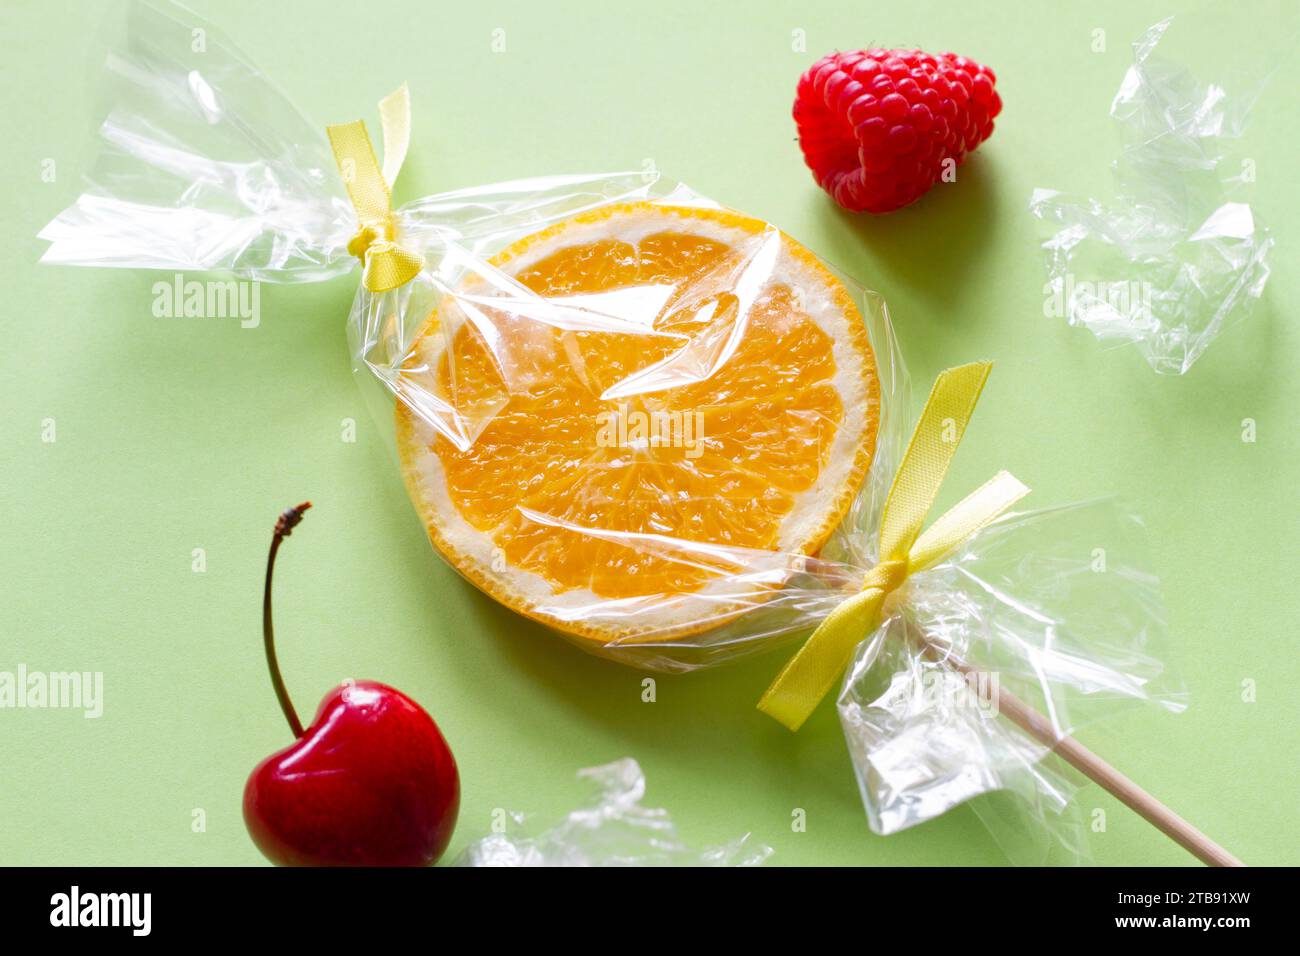 Fetta d'arancia su bastone e frutta avvolta in foglio, lecca lecca alla frutta, caramelle, sano sostituto per i dolci, concetto creativo Foto Stock